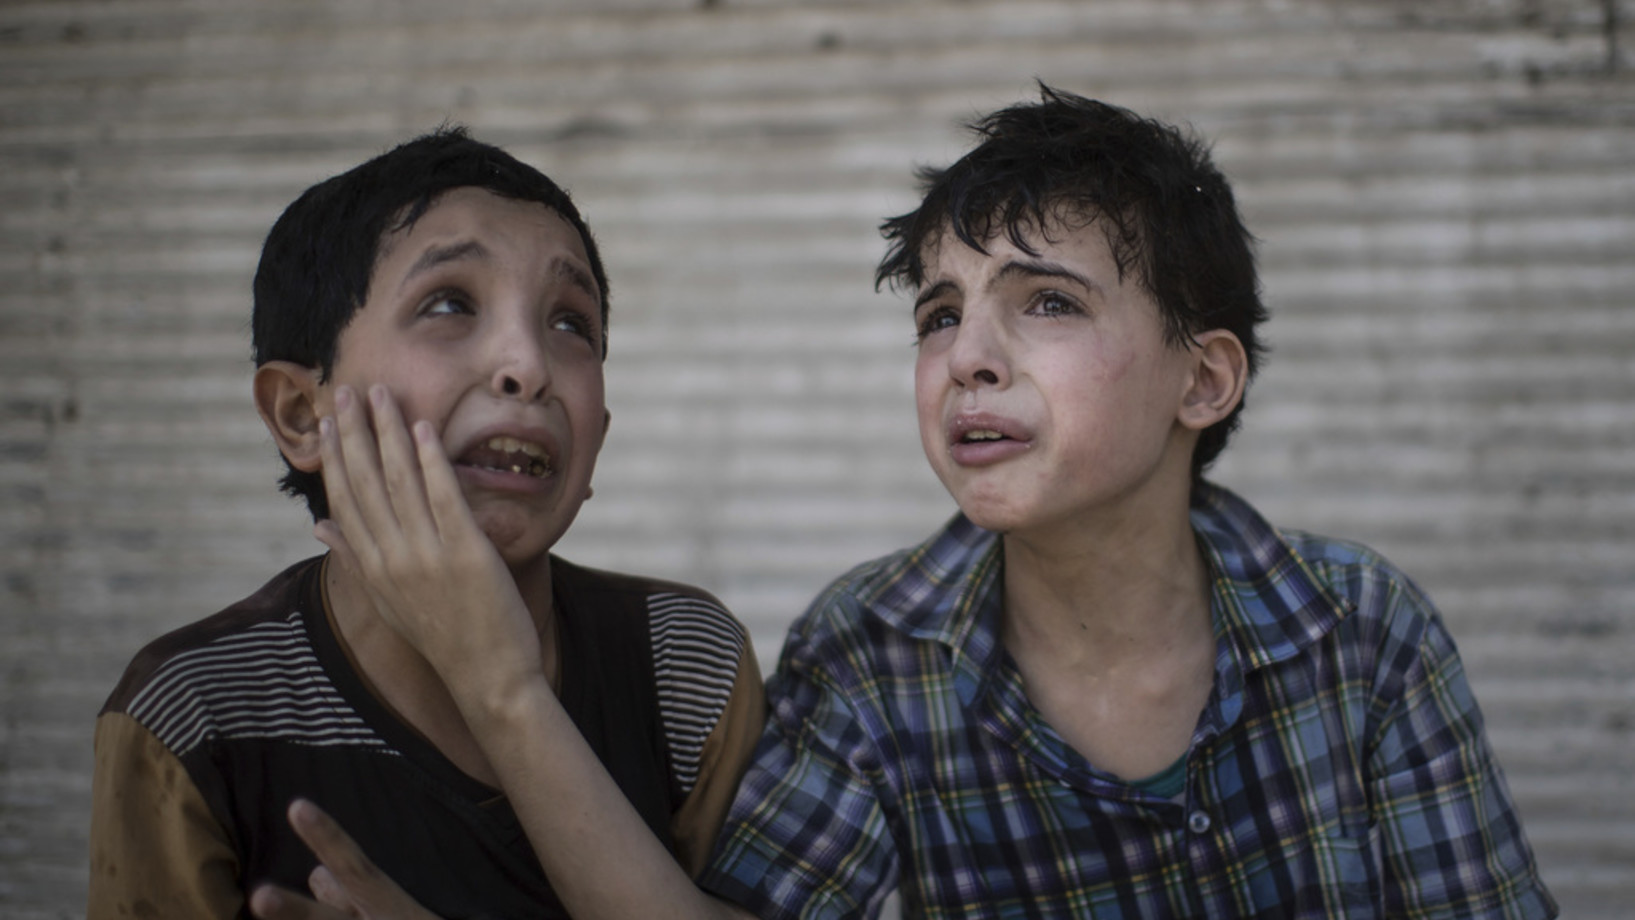 Zeid Ali (links) ist 12 Jahre alt, sein Cousin Hodayfa Ali ist 11. Ihr Haus in der Altstadt von Mosul ist während der Kämpfe eingestürzt. Die beiden Knaben sagen, einige Familienangehörige würden sich noch immer unter den Trümmern befinden. (Foto: Keystone/AP/Felipe Dana)

